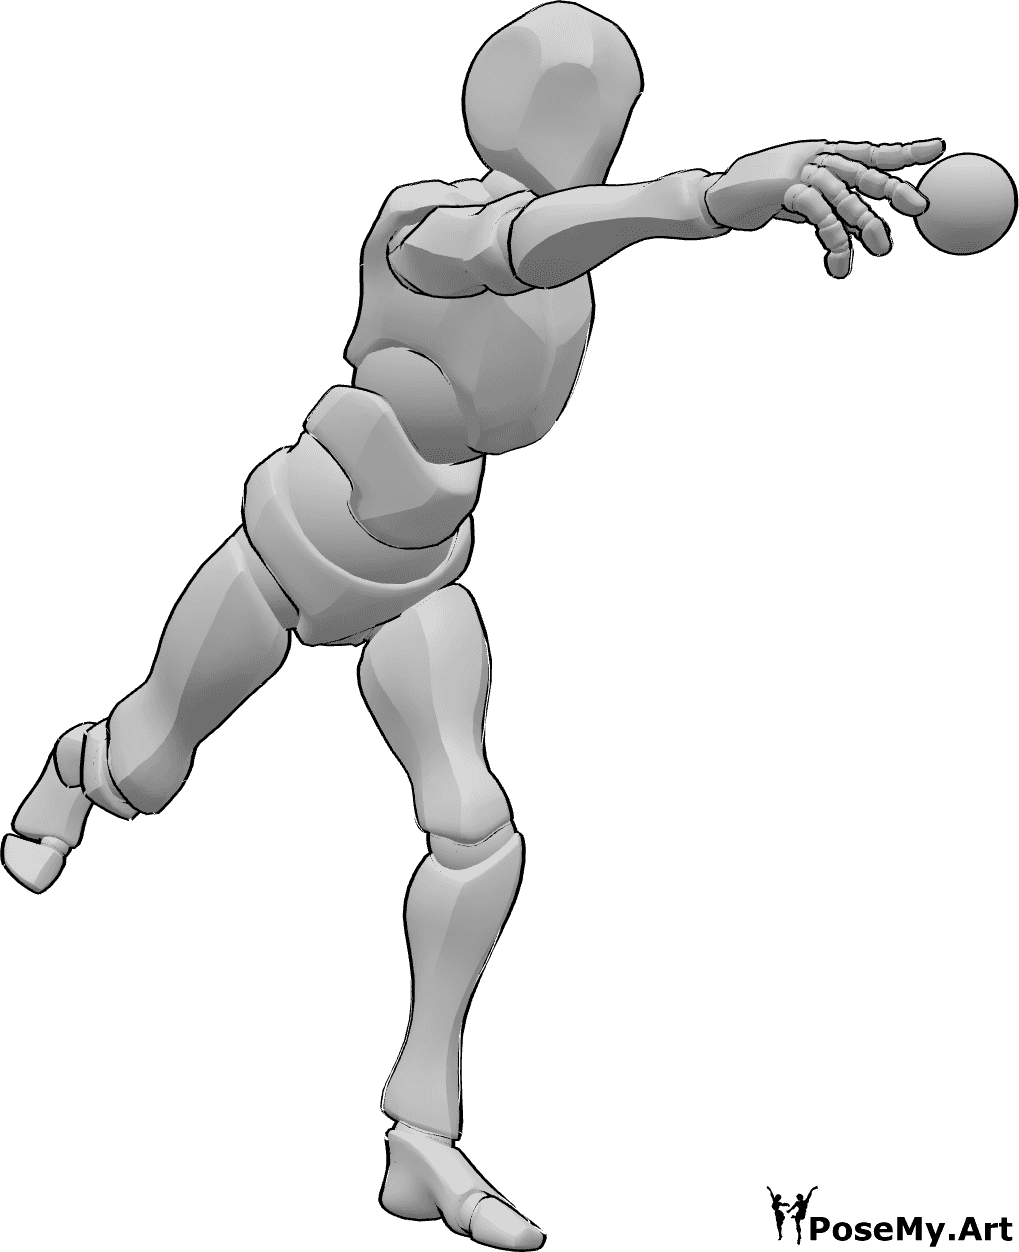 Riferimento alle pose- Posa di lancio del baseball - Il giocatore di baseball è in piedi e lancia la palla con la mano destra.